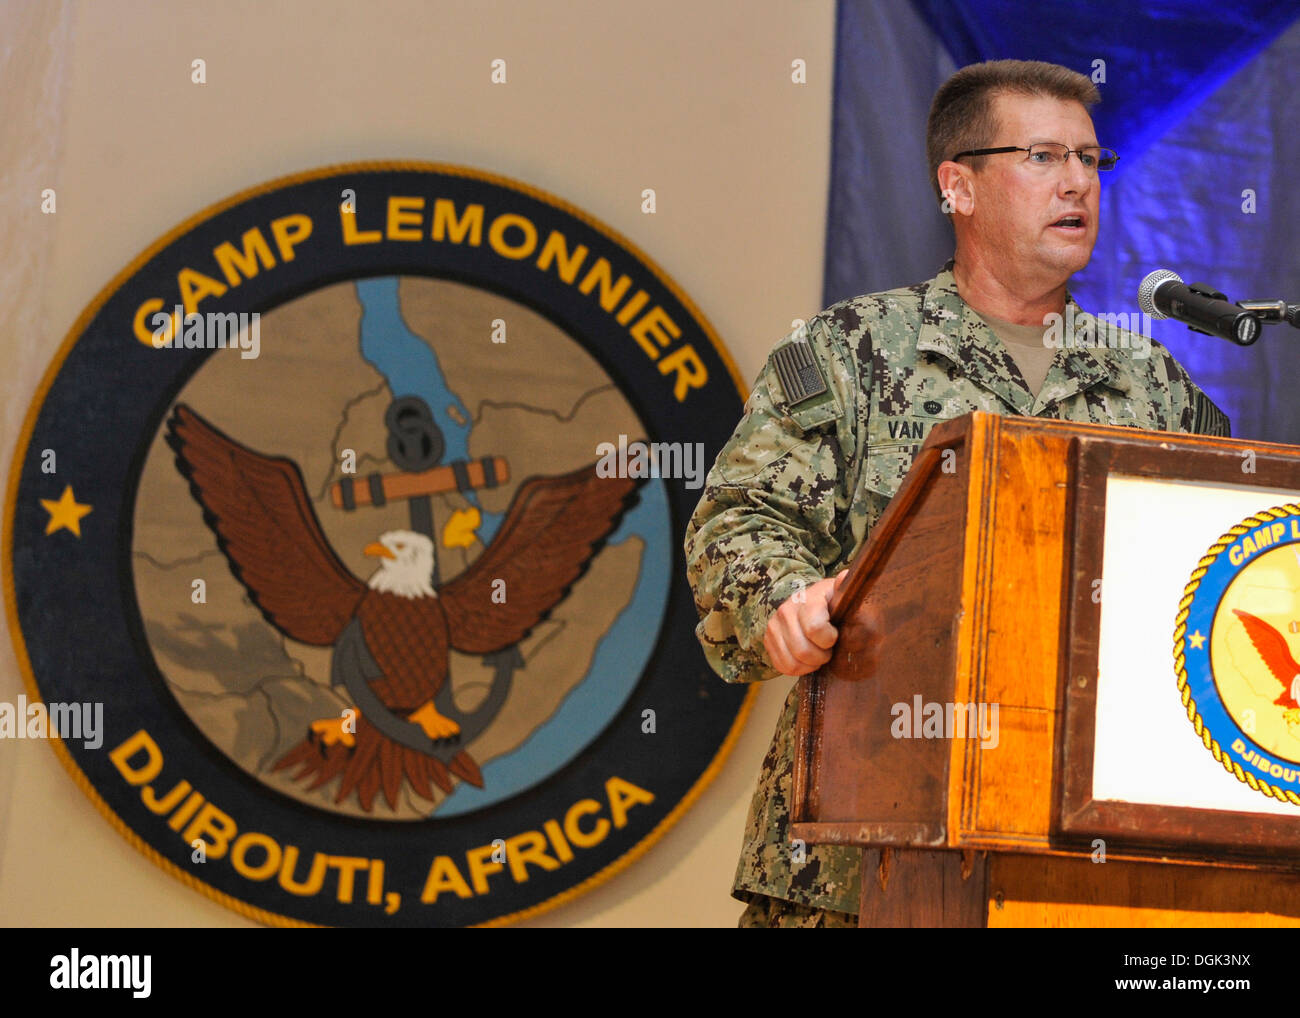 Navy Capt. Peter Van acciai, Camp Lemonnier comandante, rende commento durante la Marina palla su Camp Lemonnier. La sfera è stata organizzata per celebrare la Marina il 238th compleanno. Foto Stock